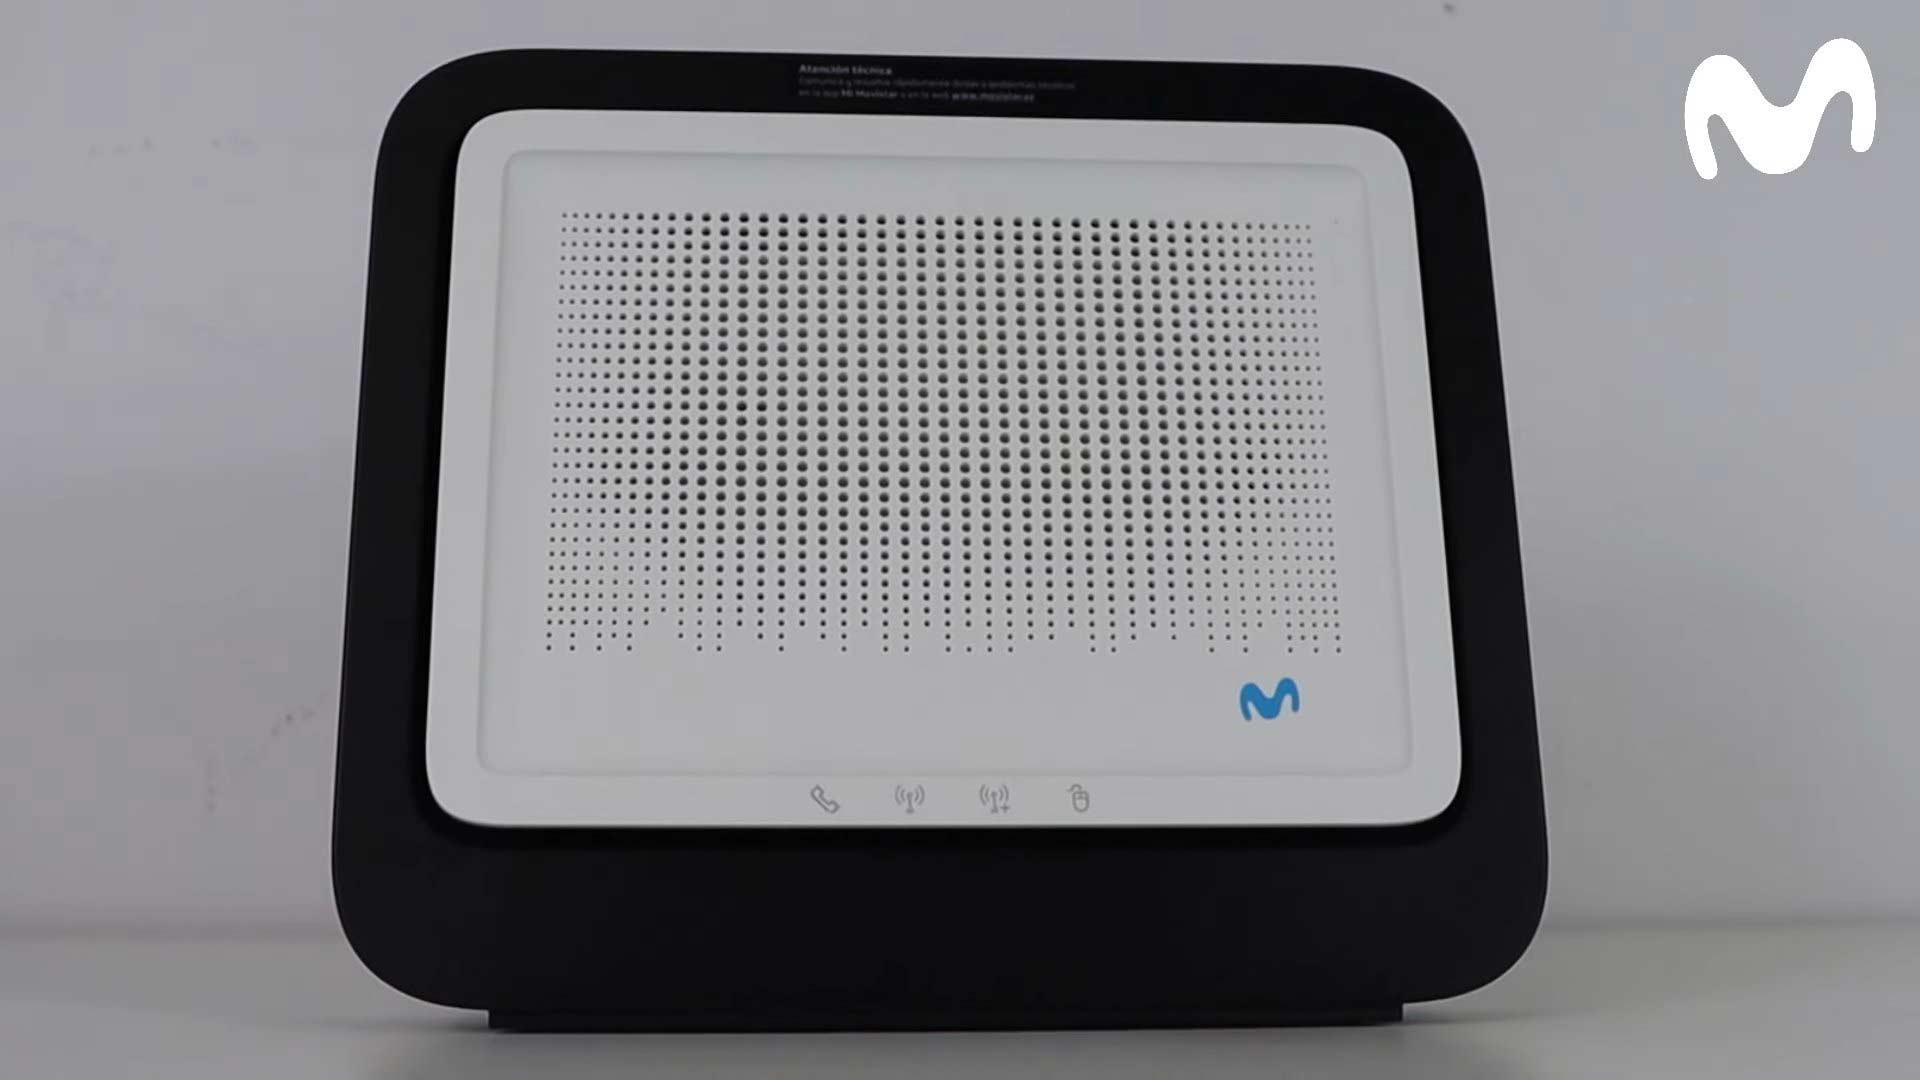 Qué ventajas ofrece el Router Smart WiFi 6 de Movistar?